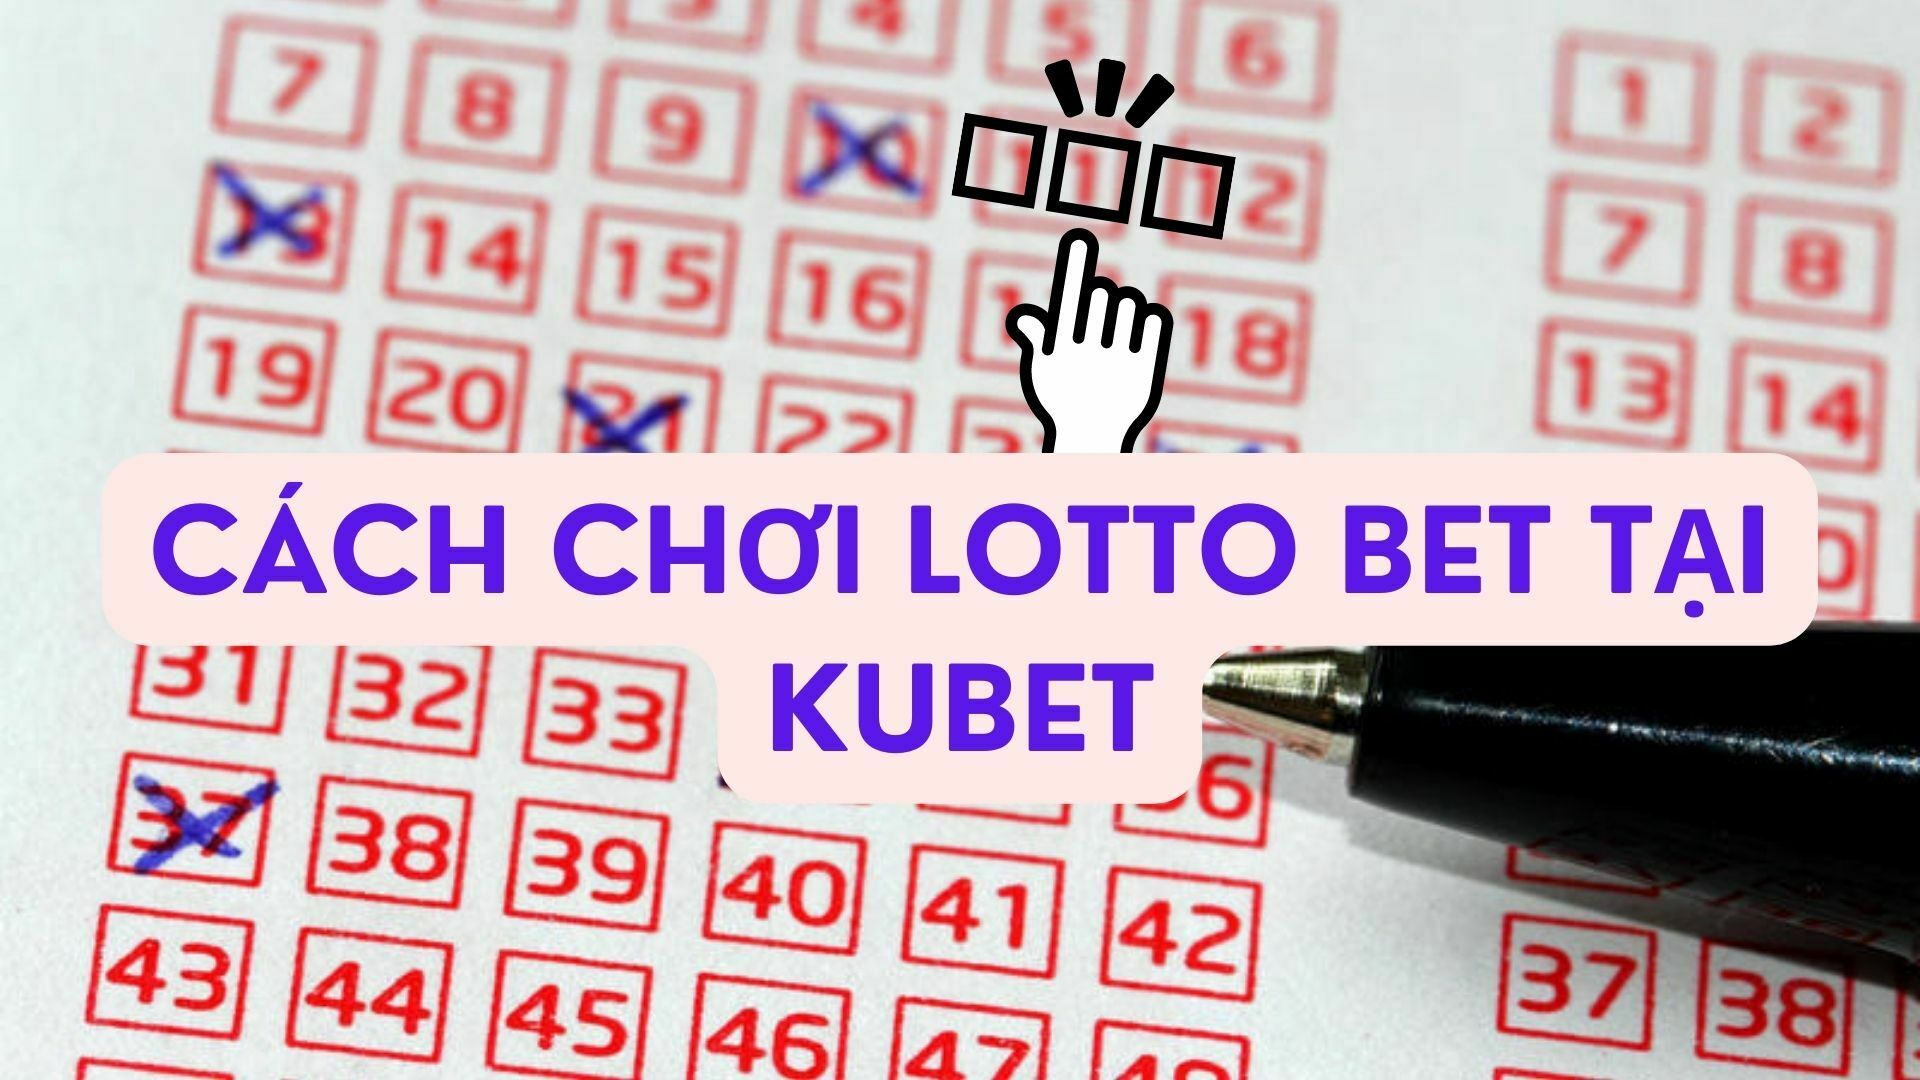 Cách chơi lotto bet tại Kubet: Hướng dẫn từ a-z chi tiết nhất